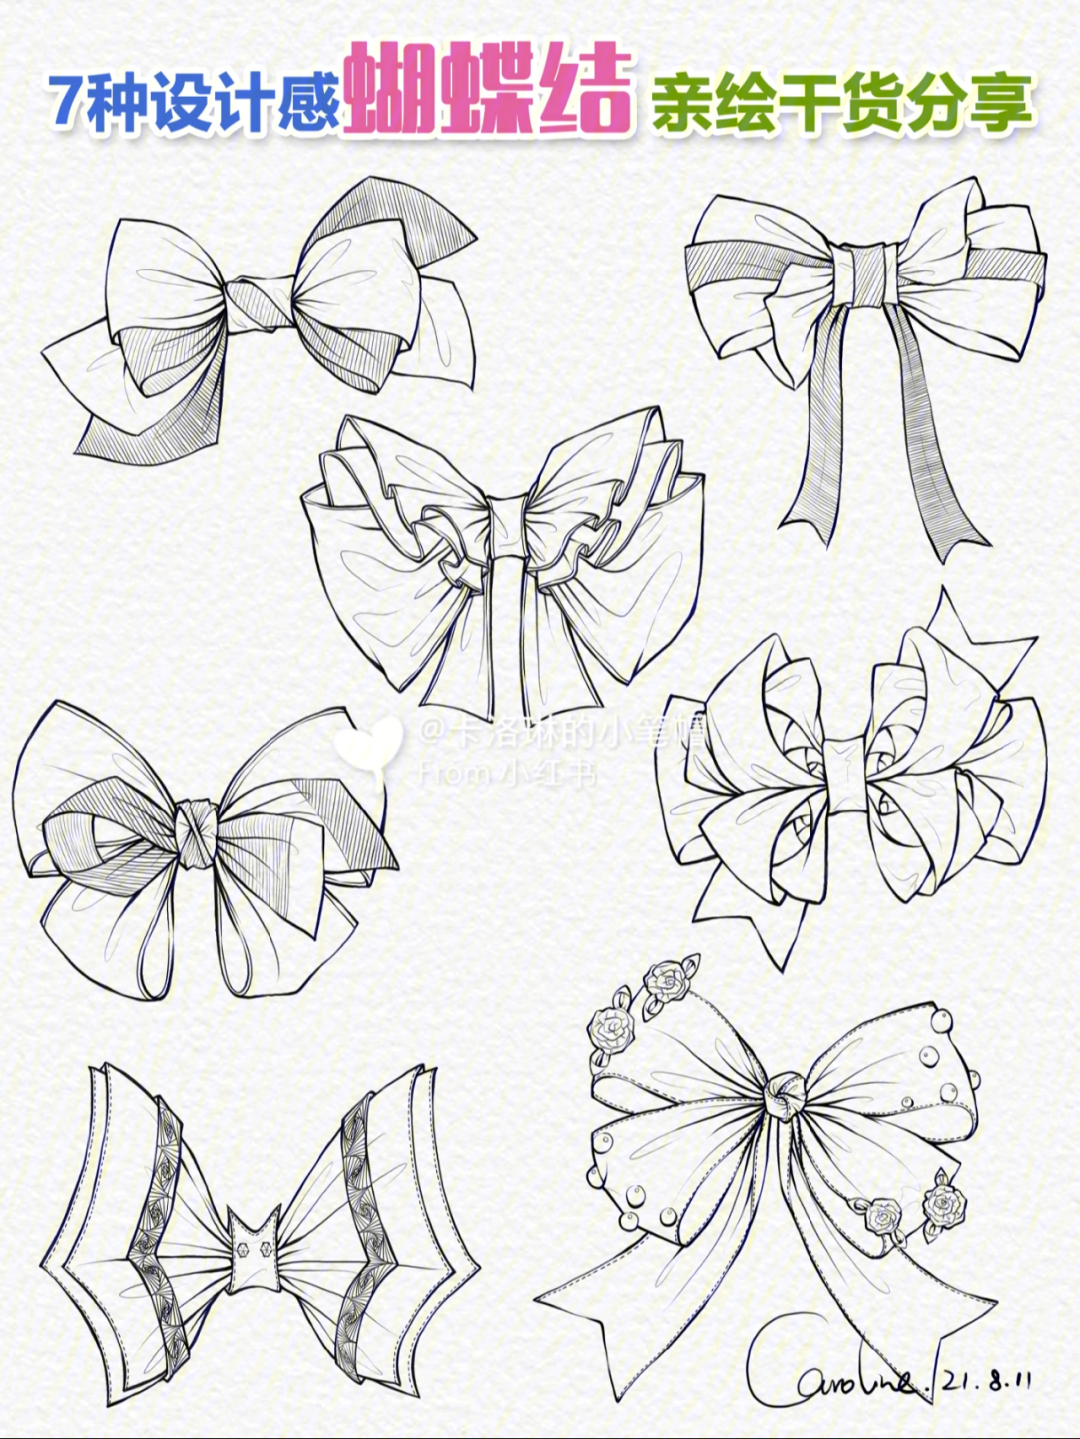 7种设计感蝴蝶结亲绘干货线稿教程